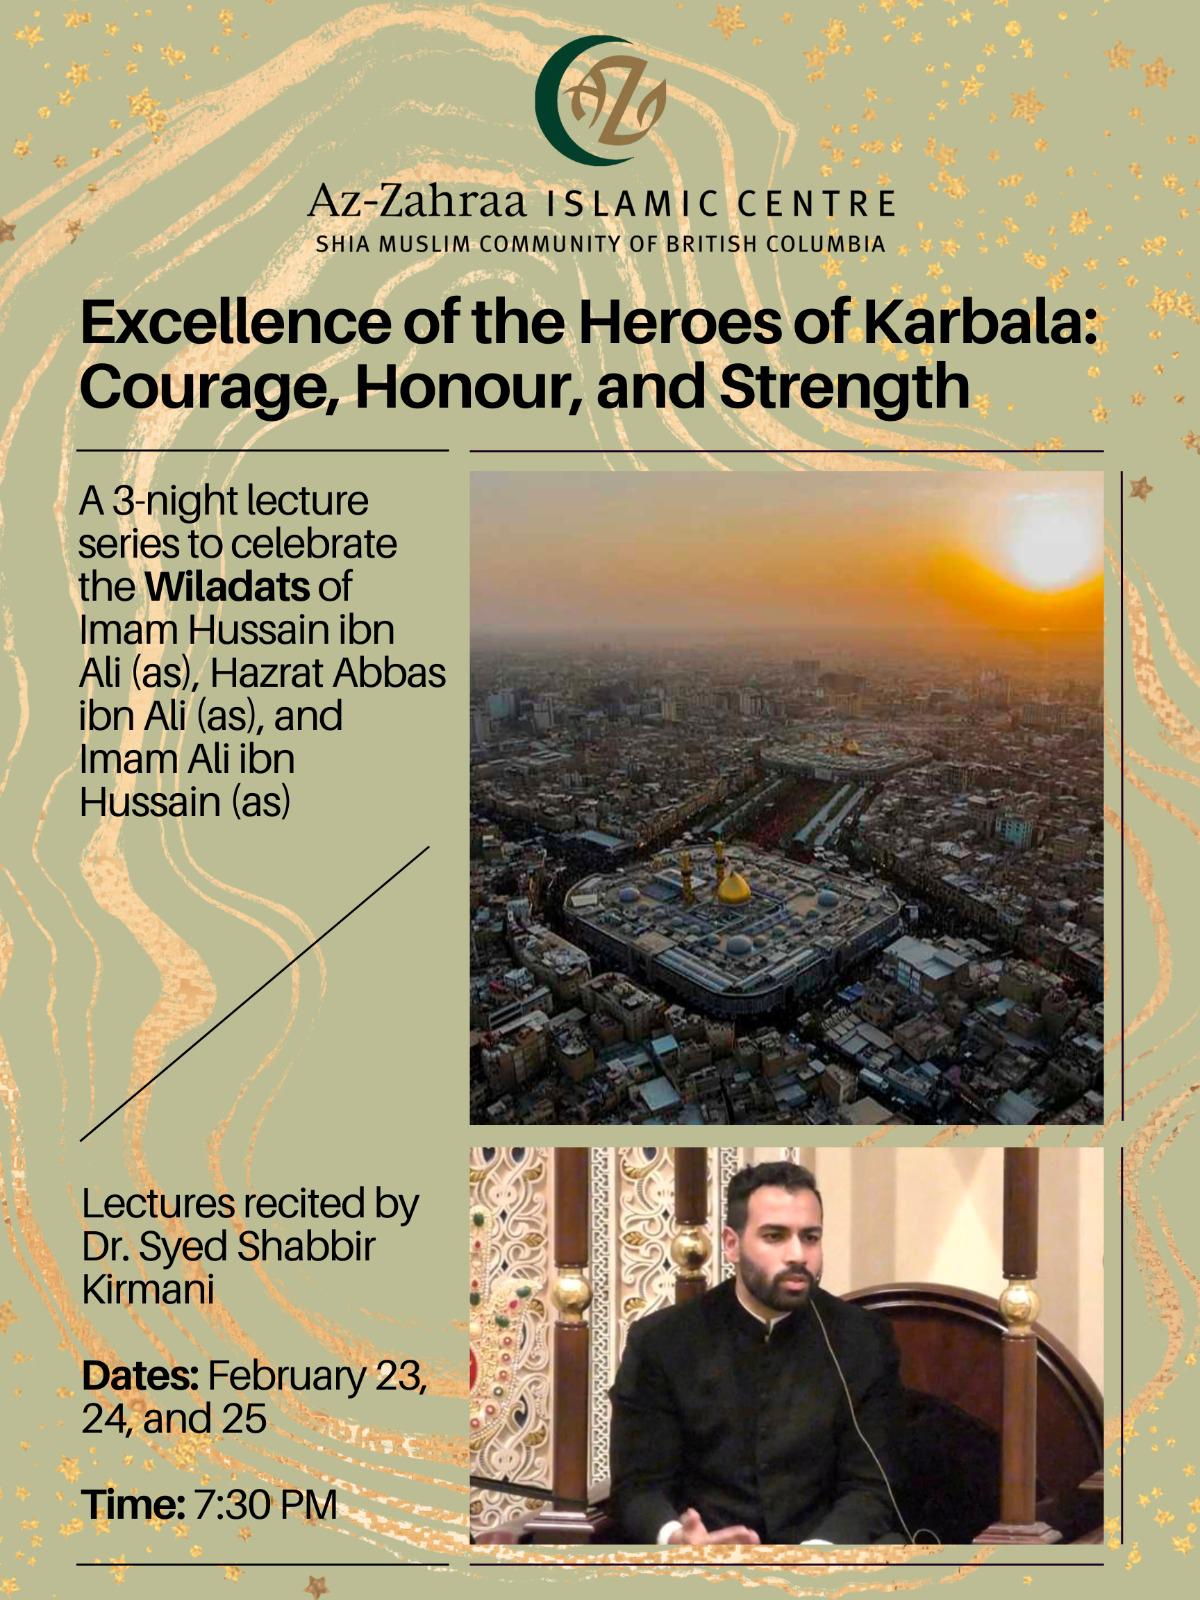 Heroes of Karbala promotional poster